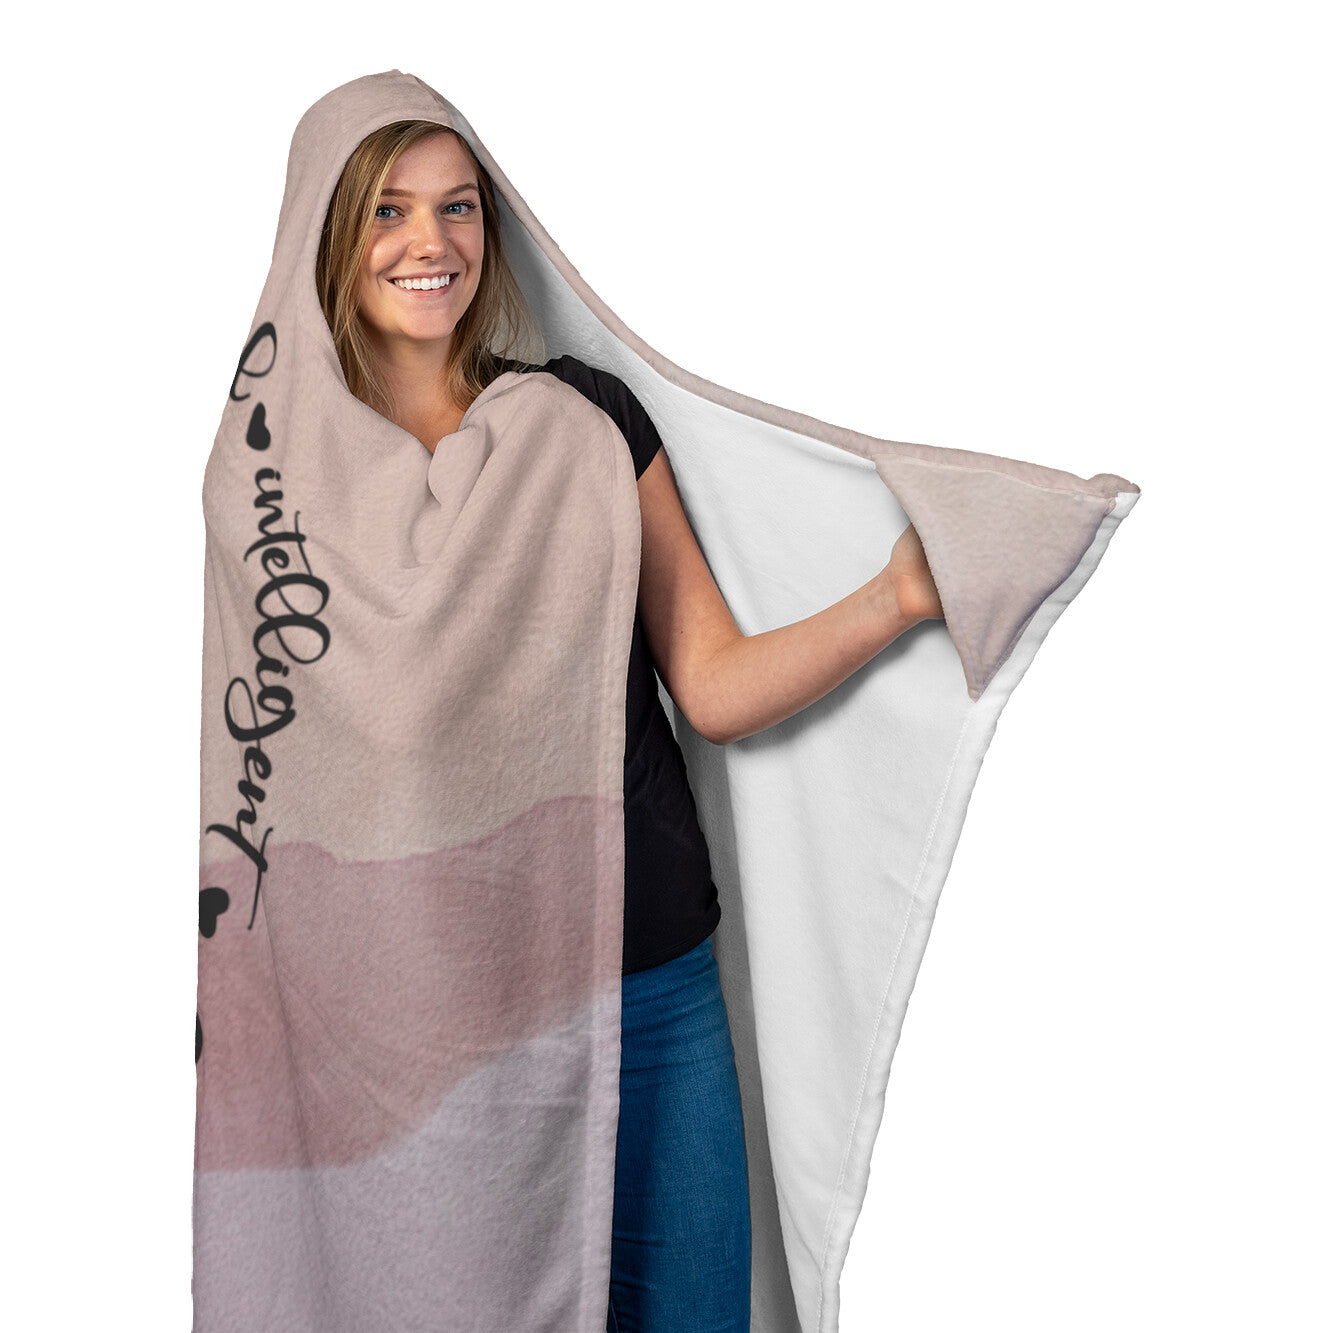 Virgo Hooded Blanket